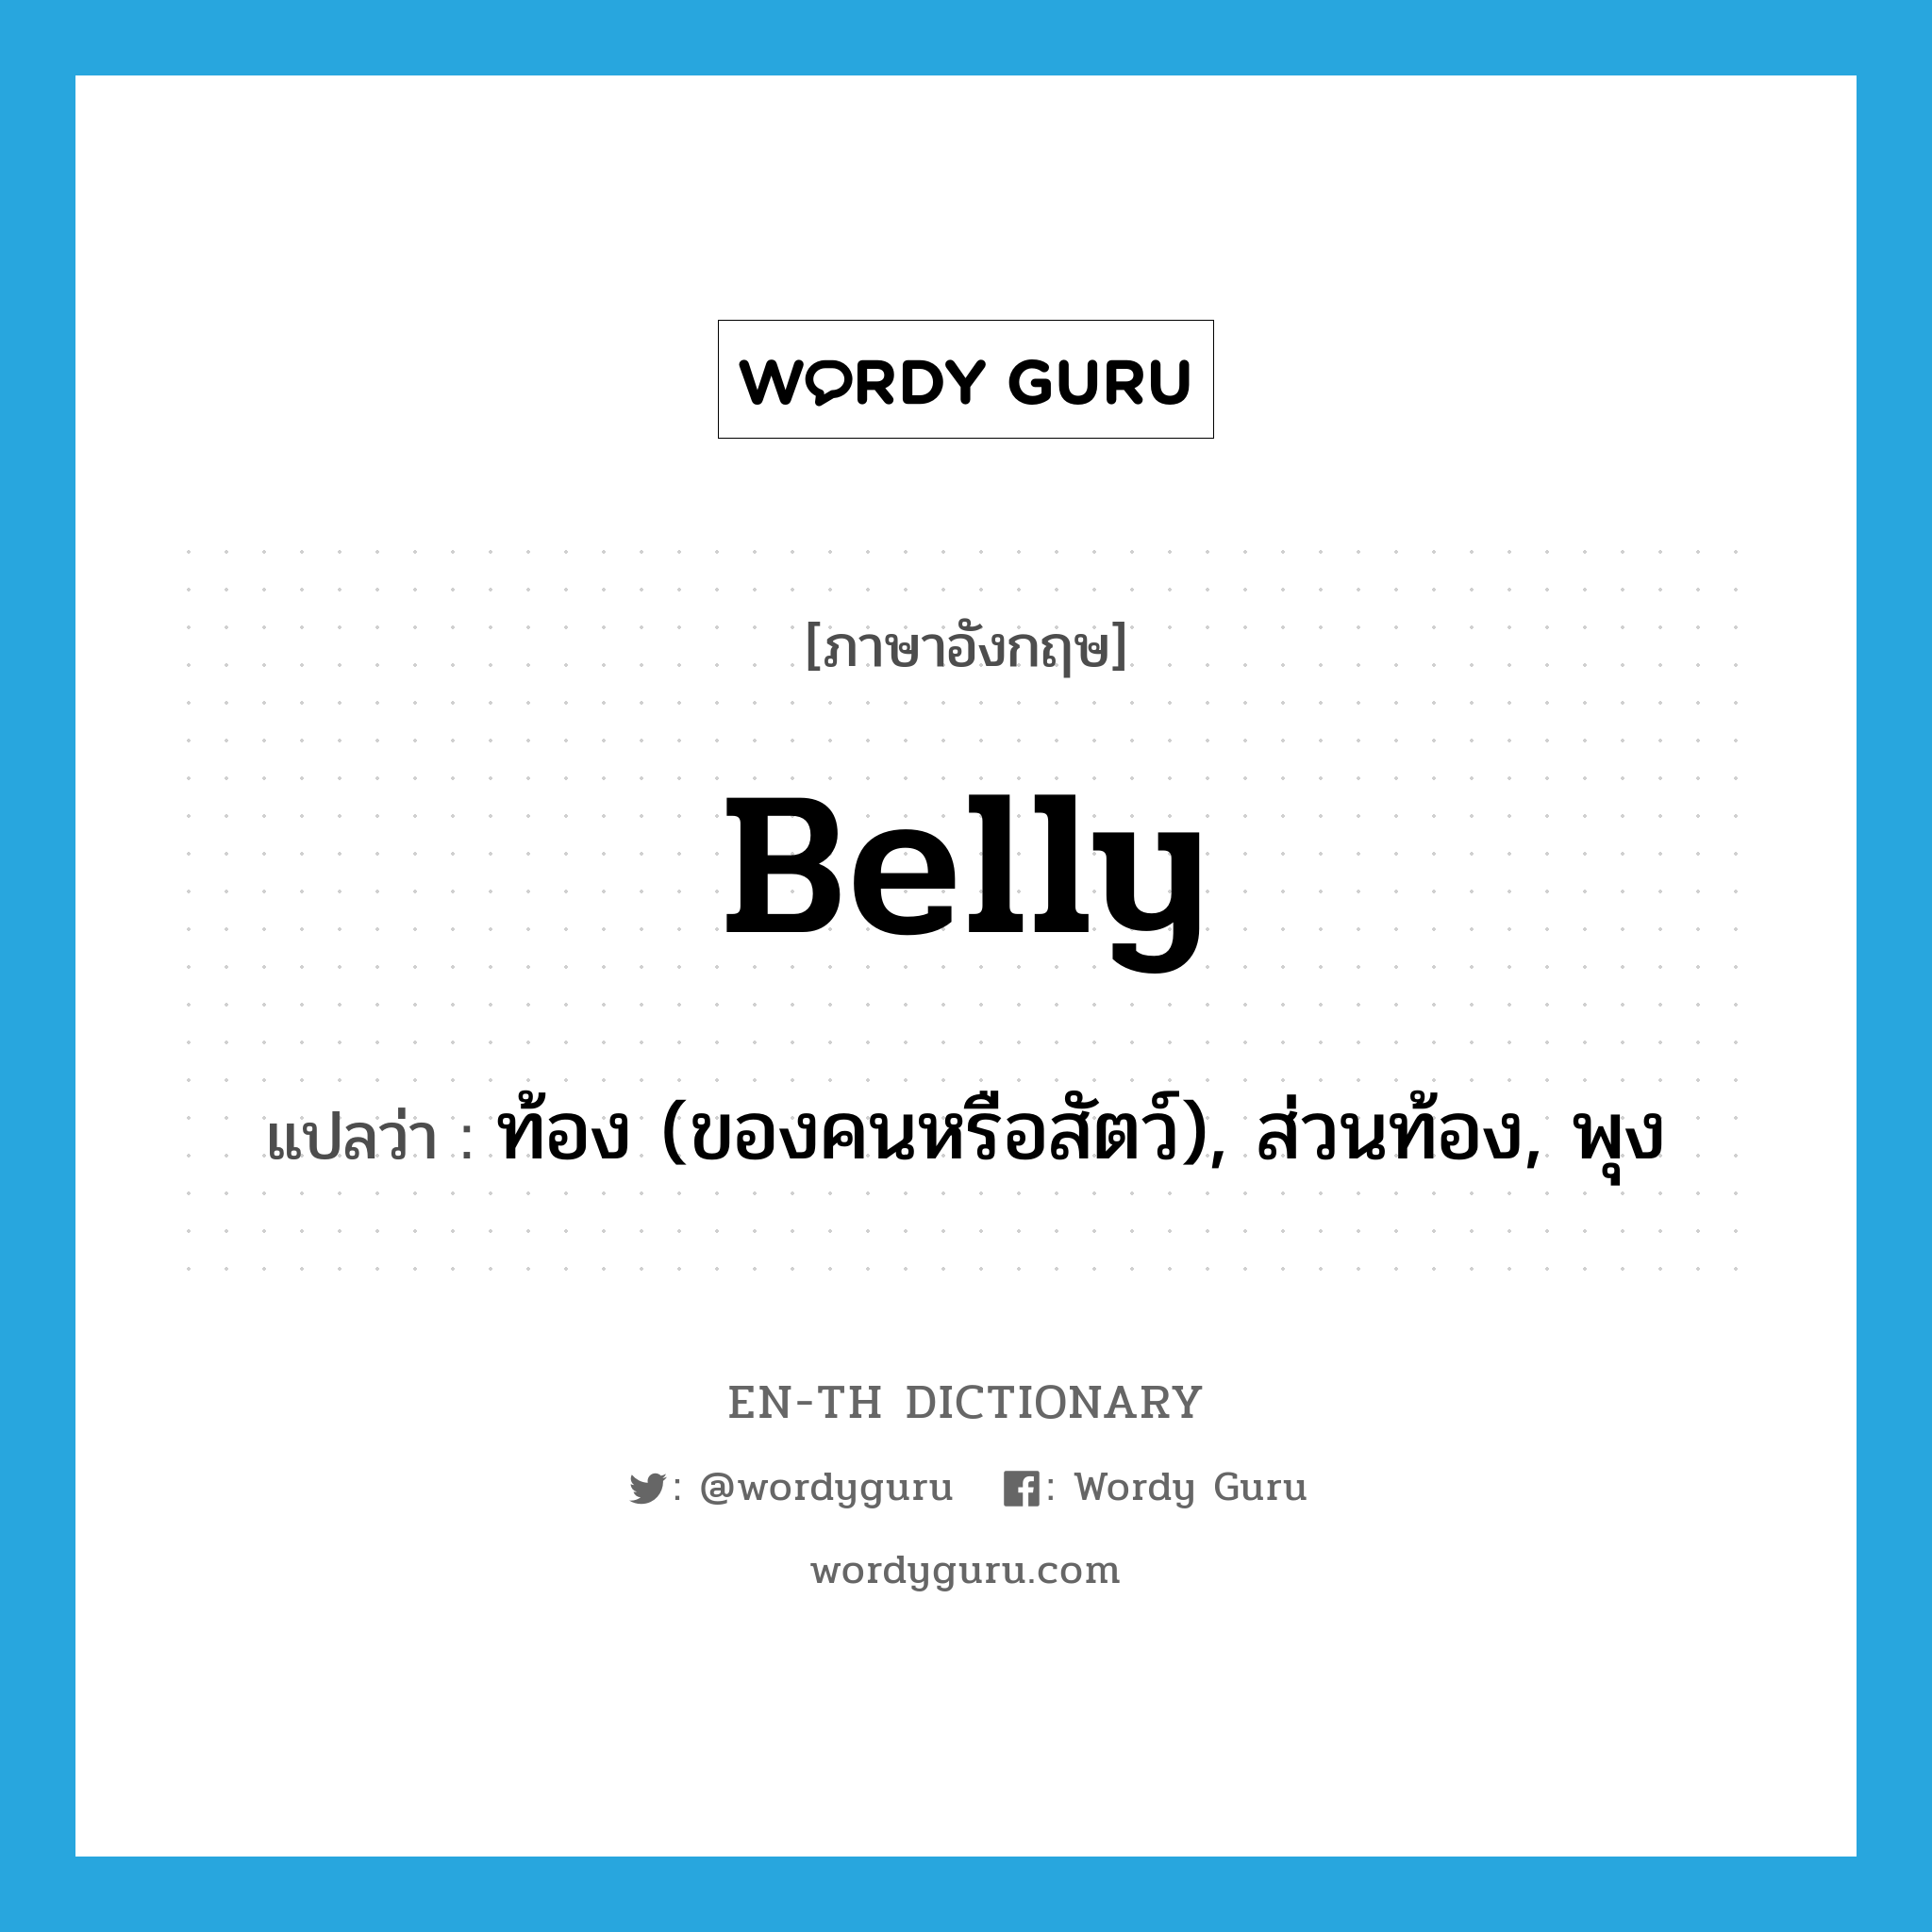 belly แปลว่า?, คำศัพท์ภาษาอังกฤษ belly แปลว่า ท้อง (ของคนหรือสัตว์), ส่วนท้อง, พุง ประเภท N หมวด N